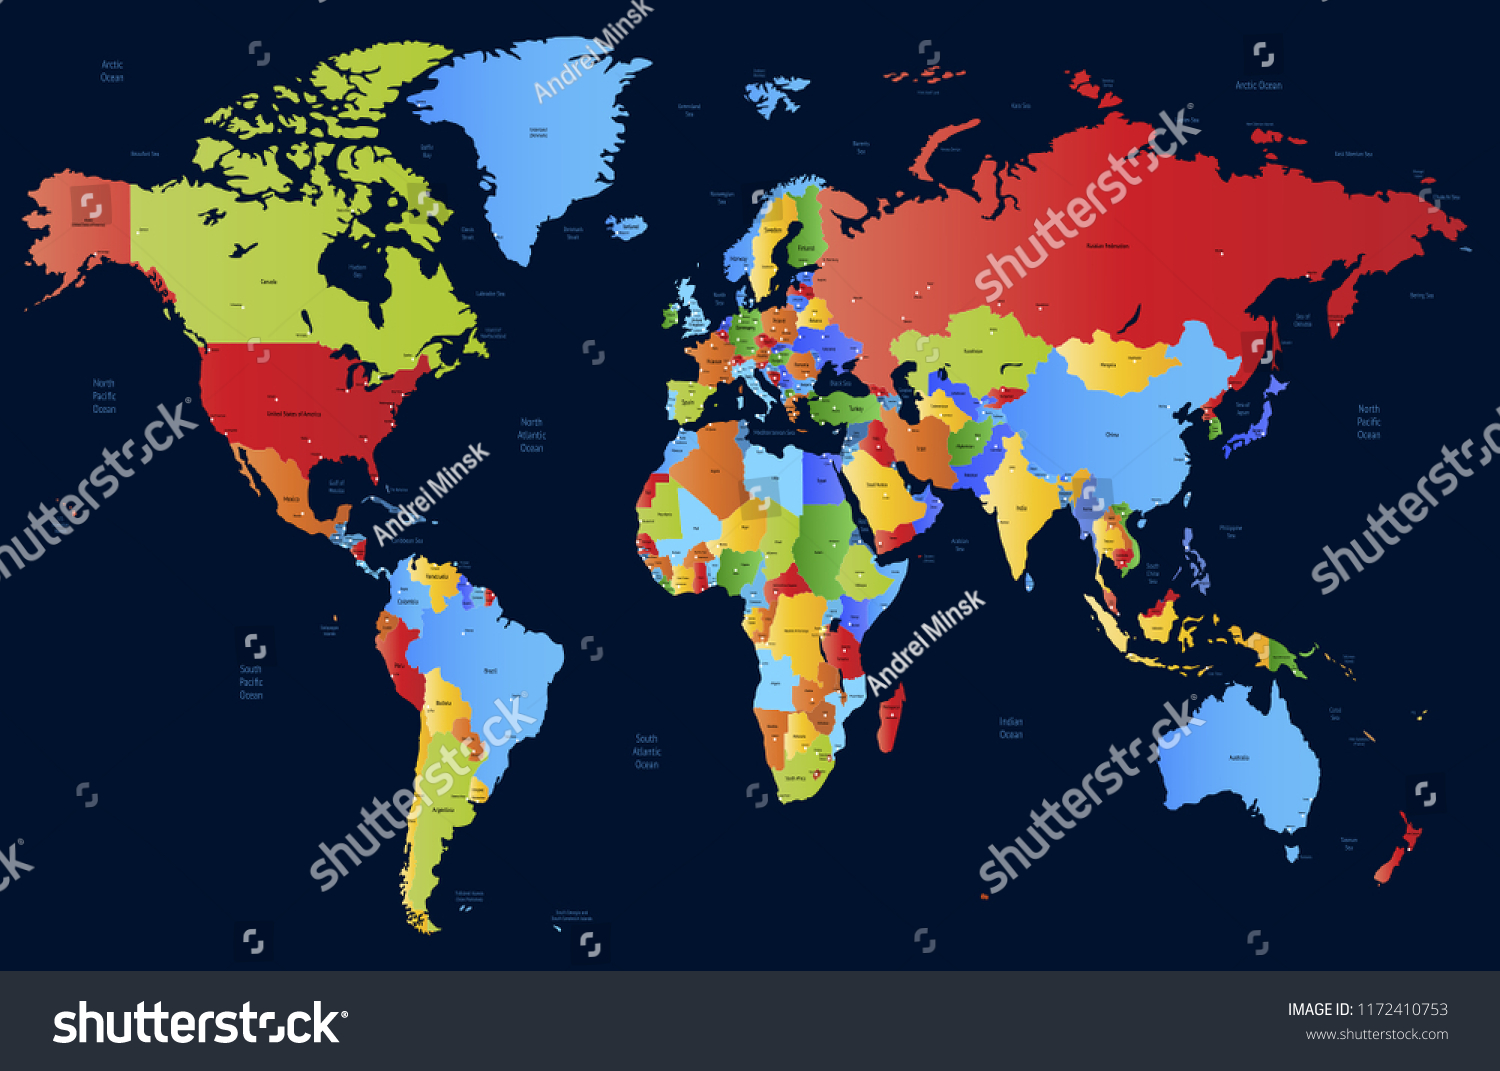 Color World Map Vector Vector De Stock Libre De Regalías 1172410753 Shutterstock 8714